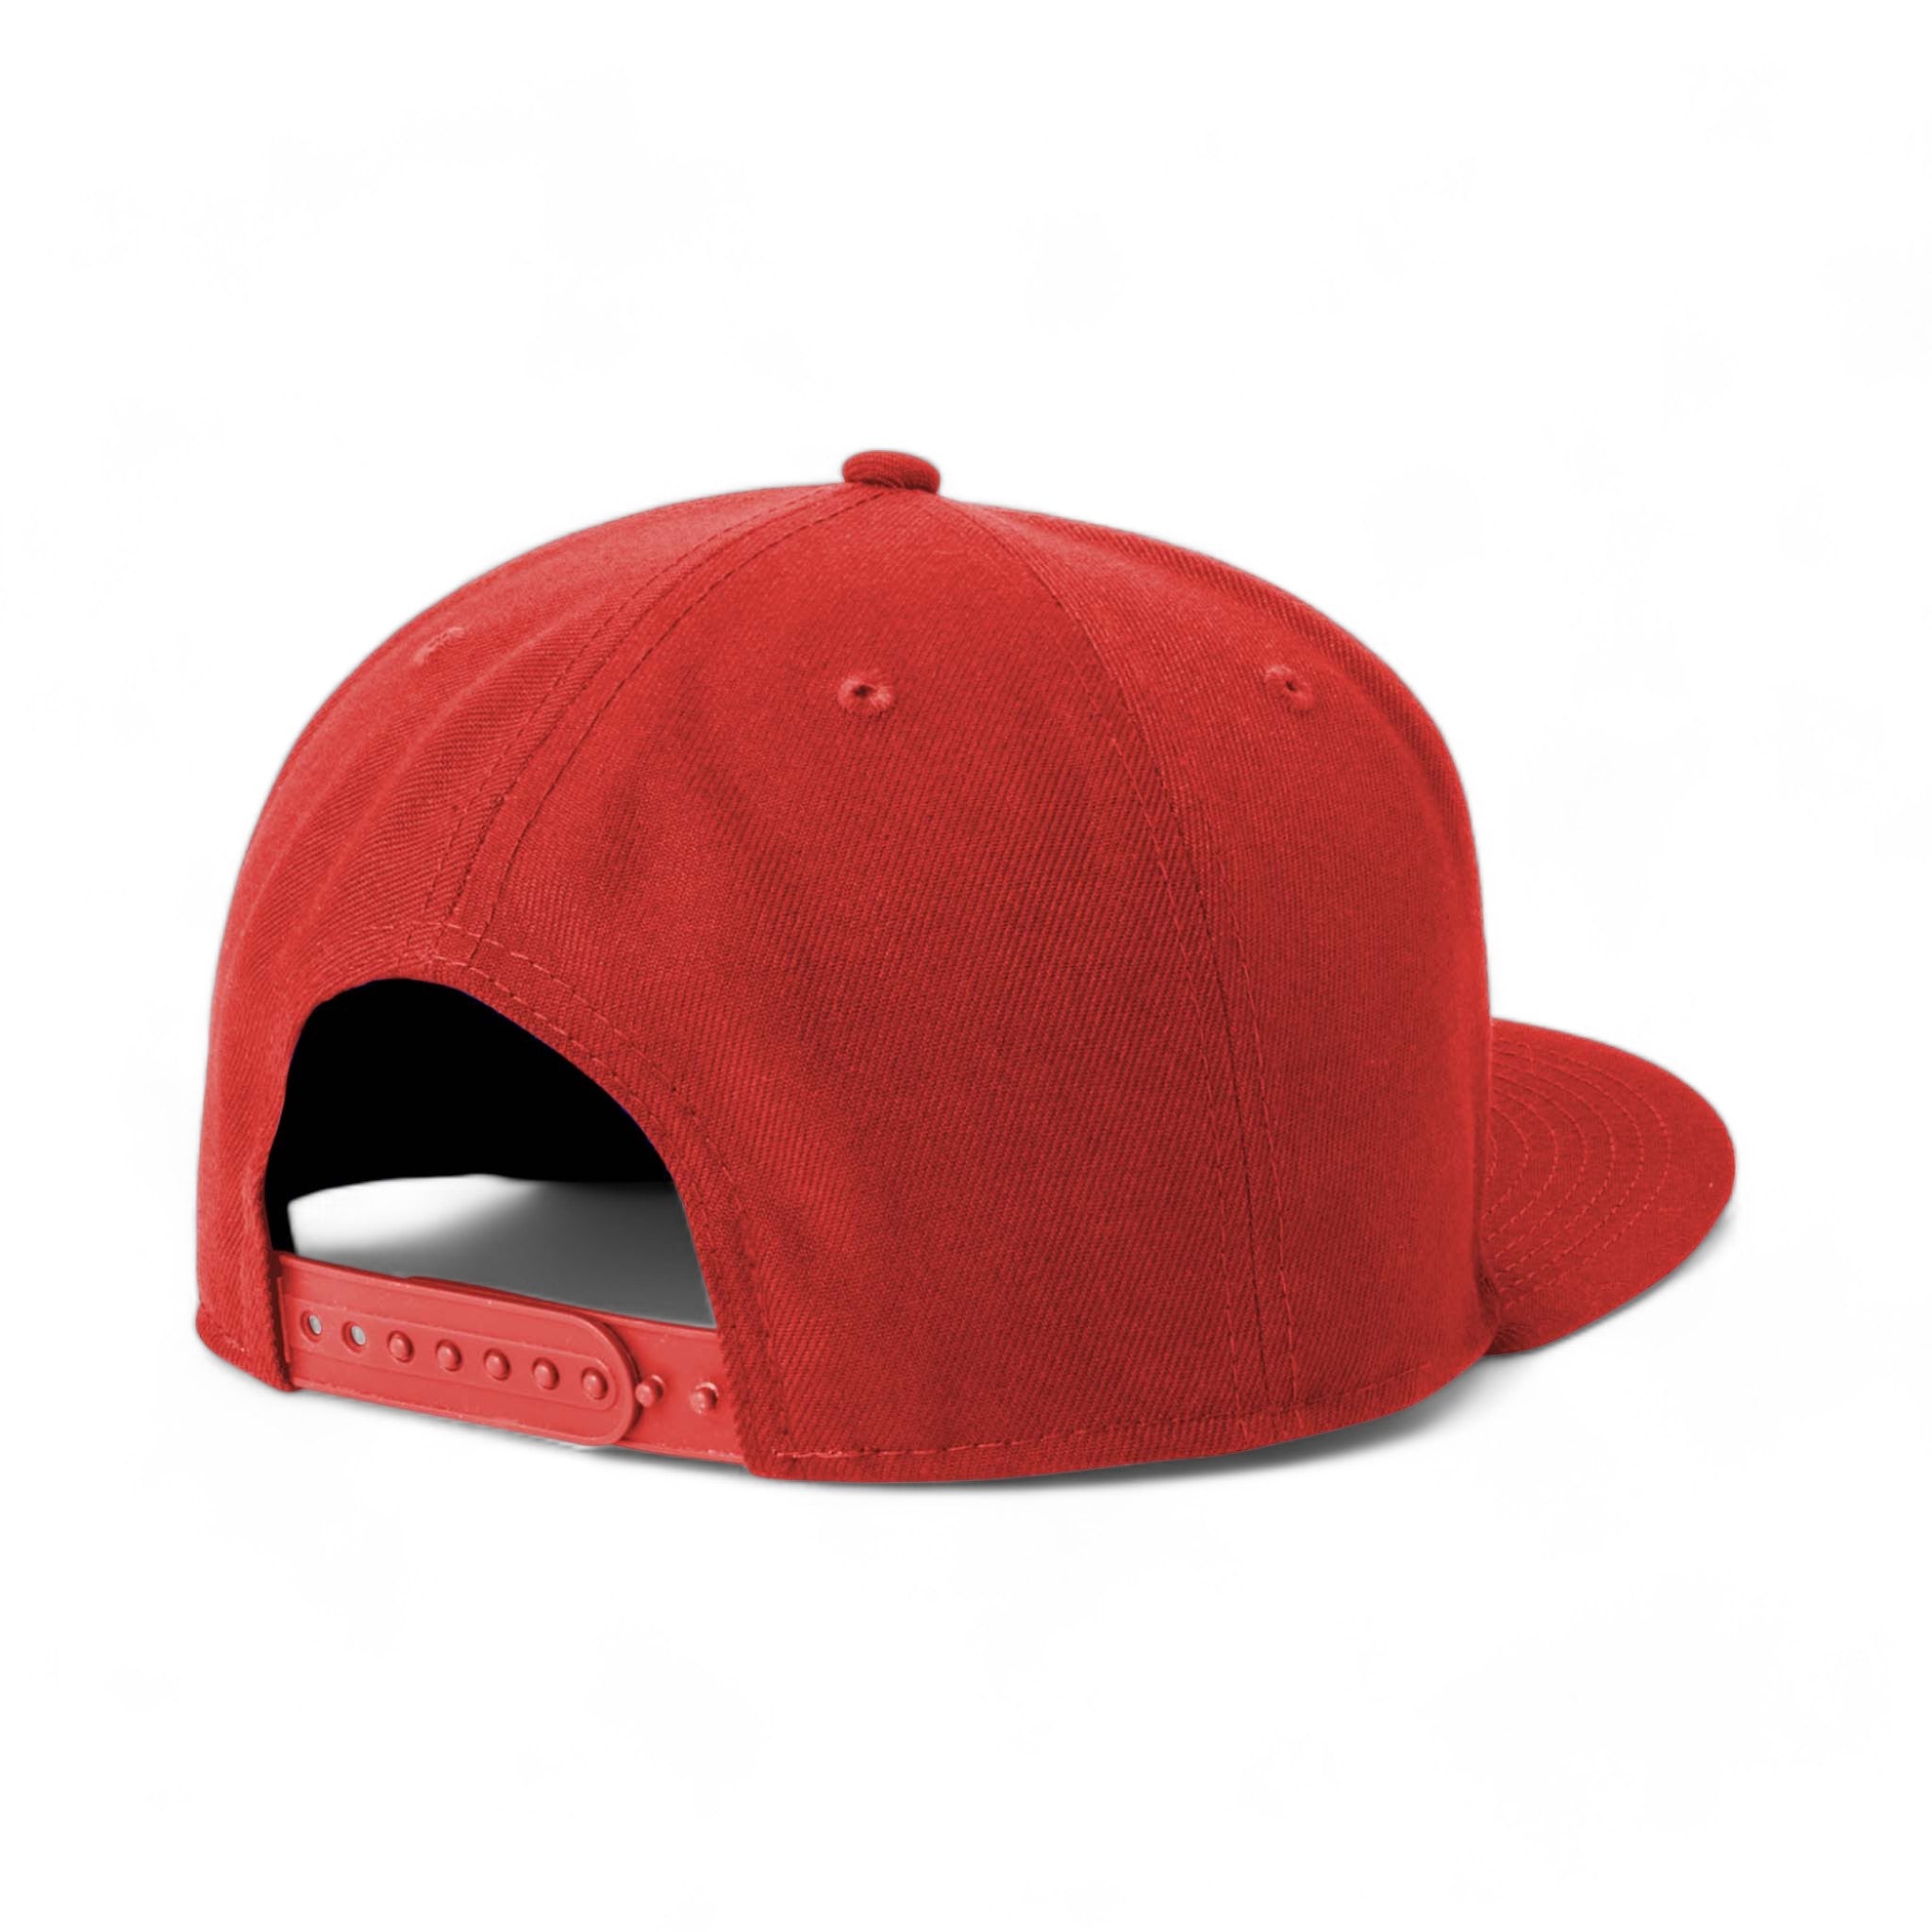 Back view of New Era NE4020 custom hat in scarlet